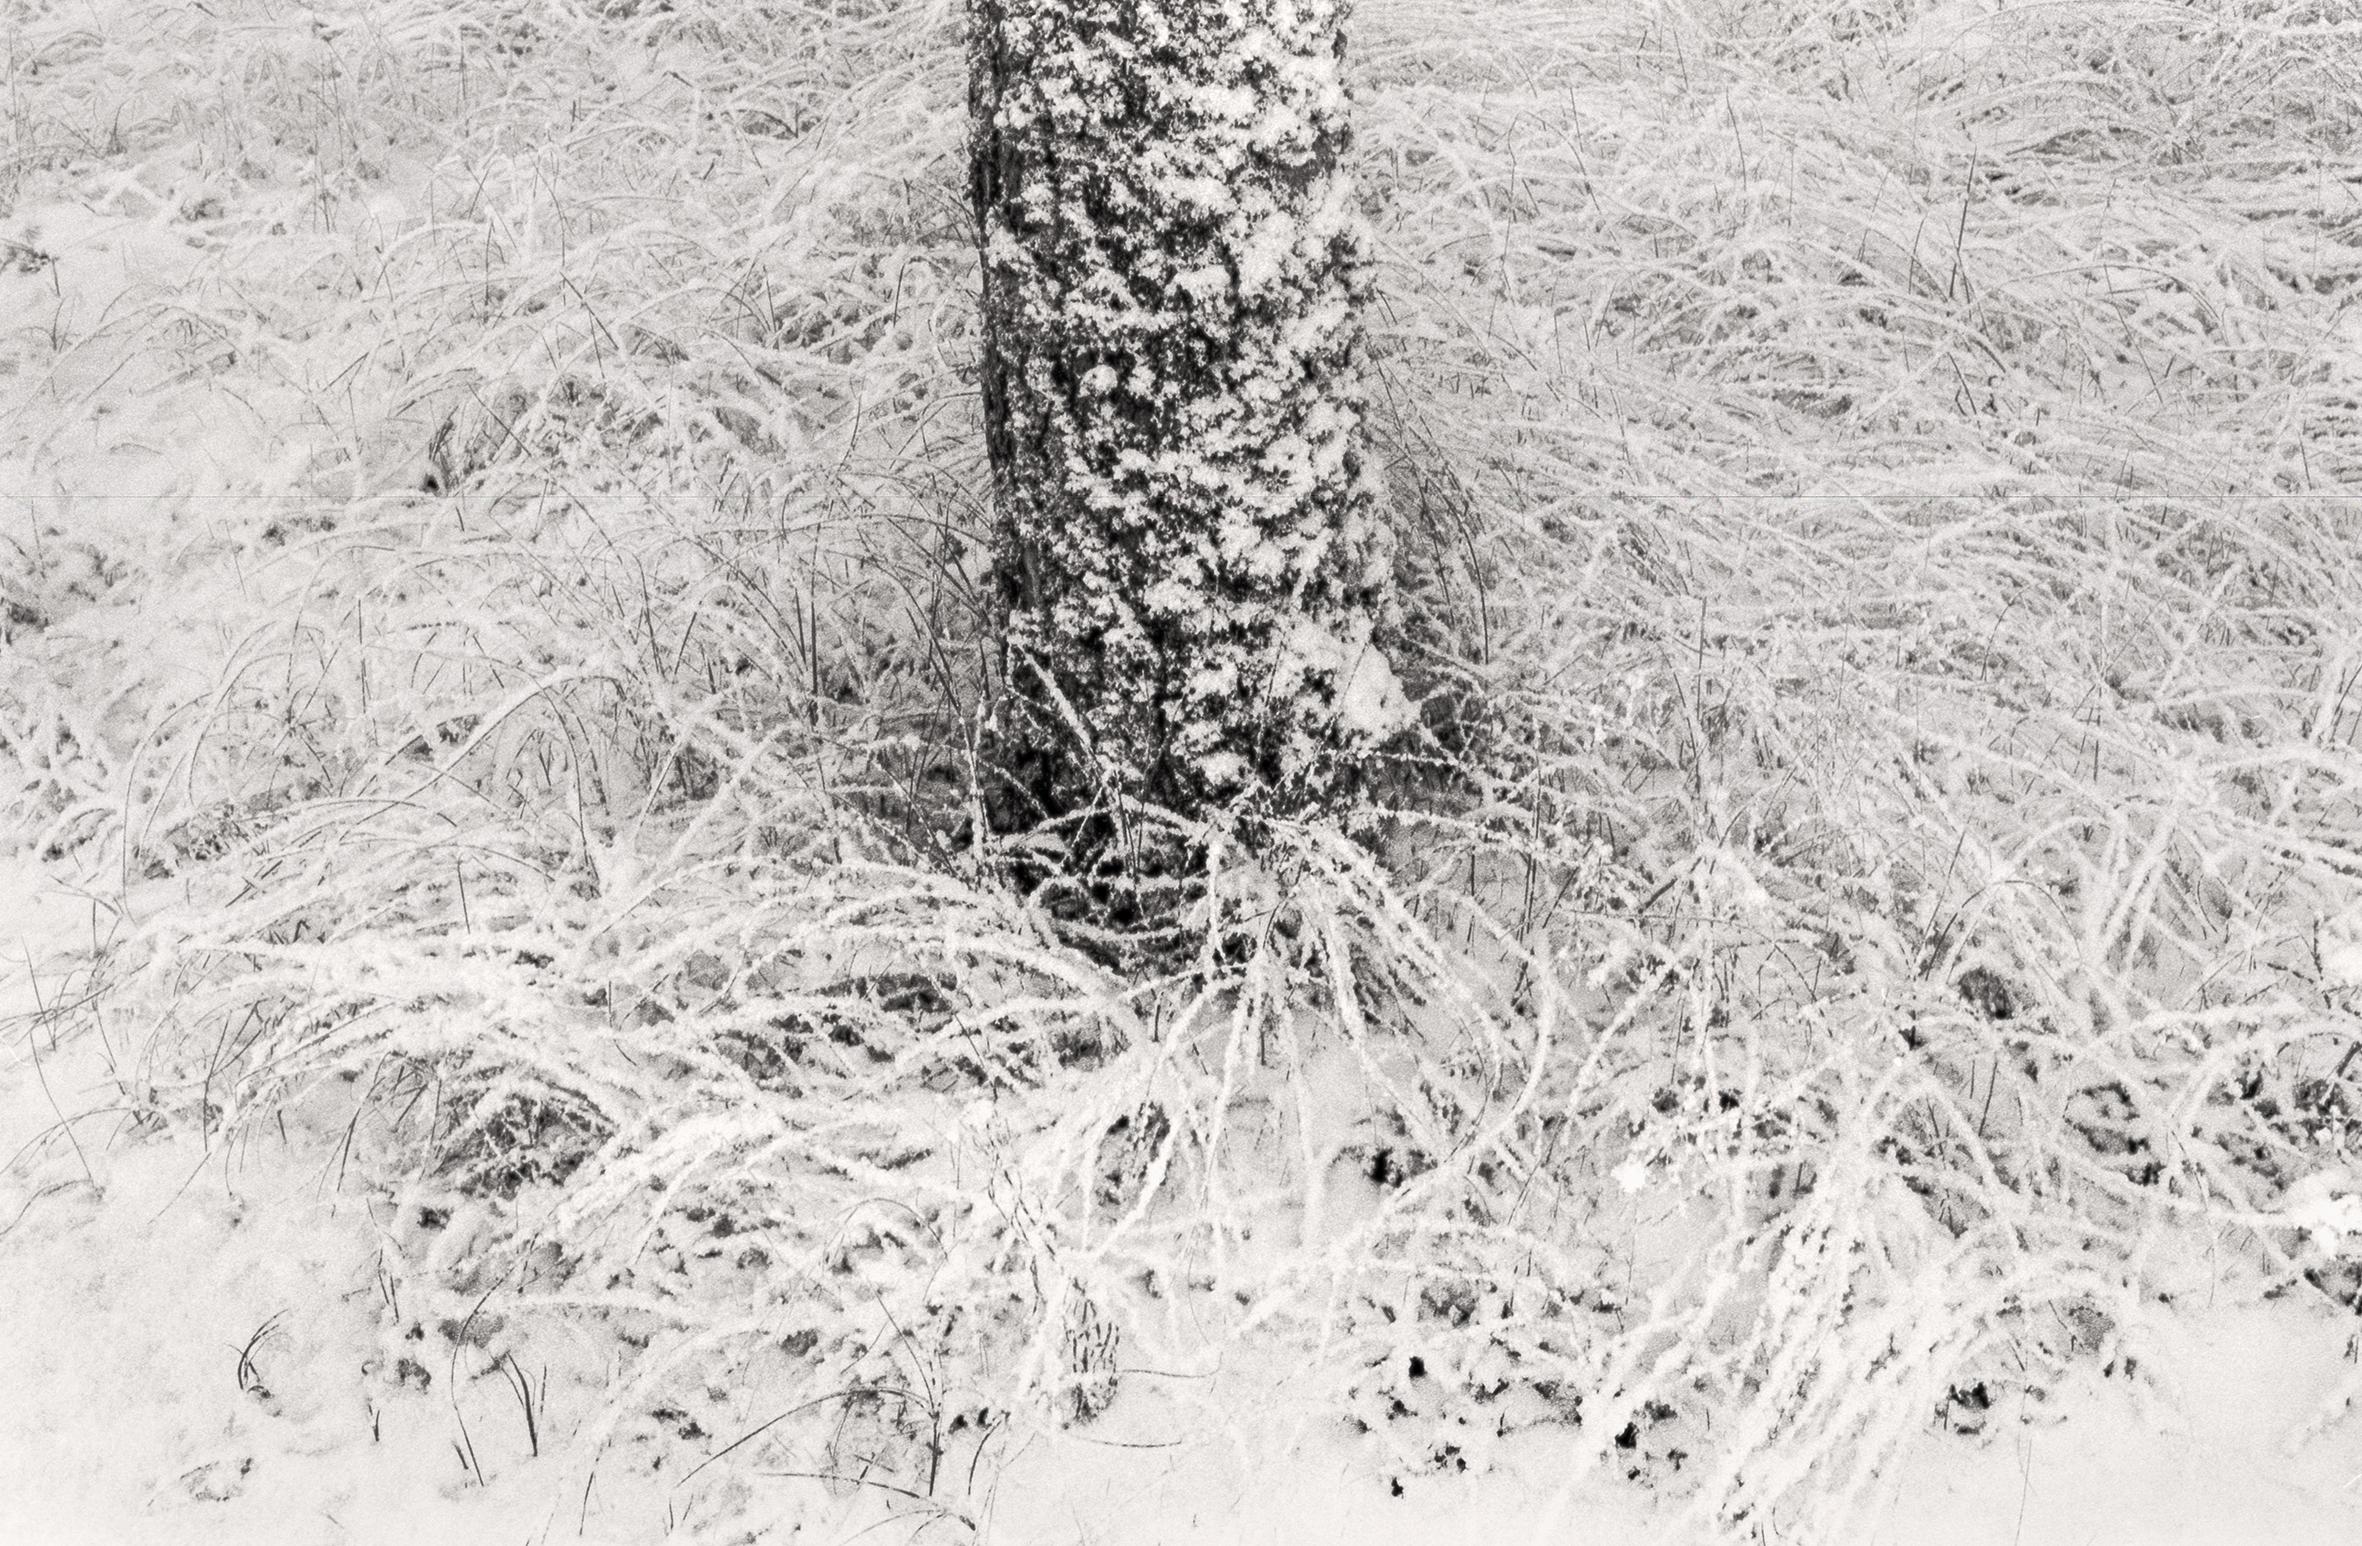 Landscape Photograph Ugne Pouwell - Gelée baltique #2" - photographie de paysage analogique en noir et blanc 100 x 65 cm